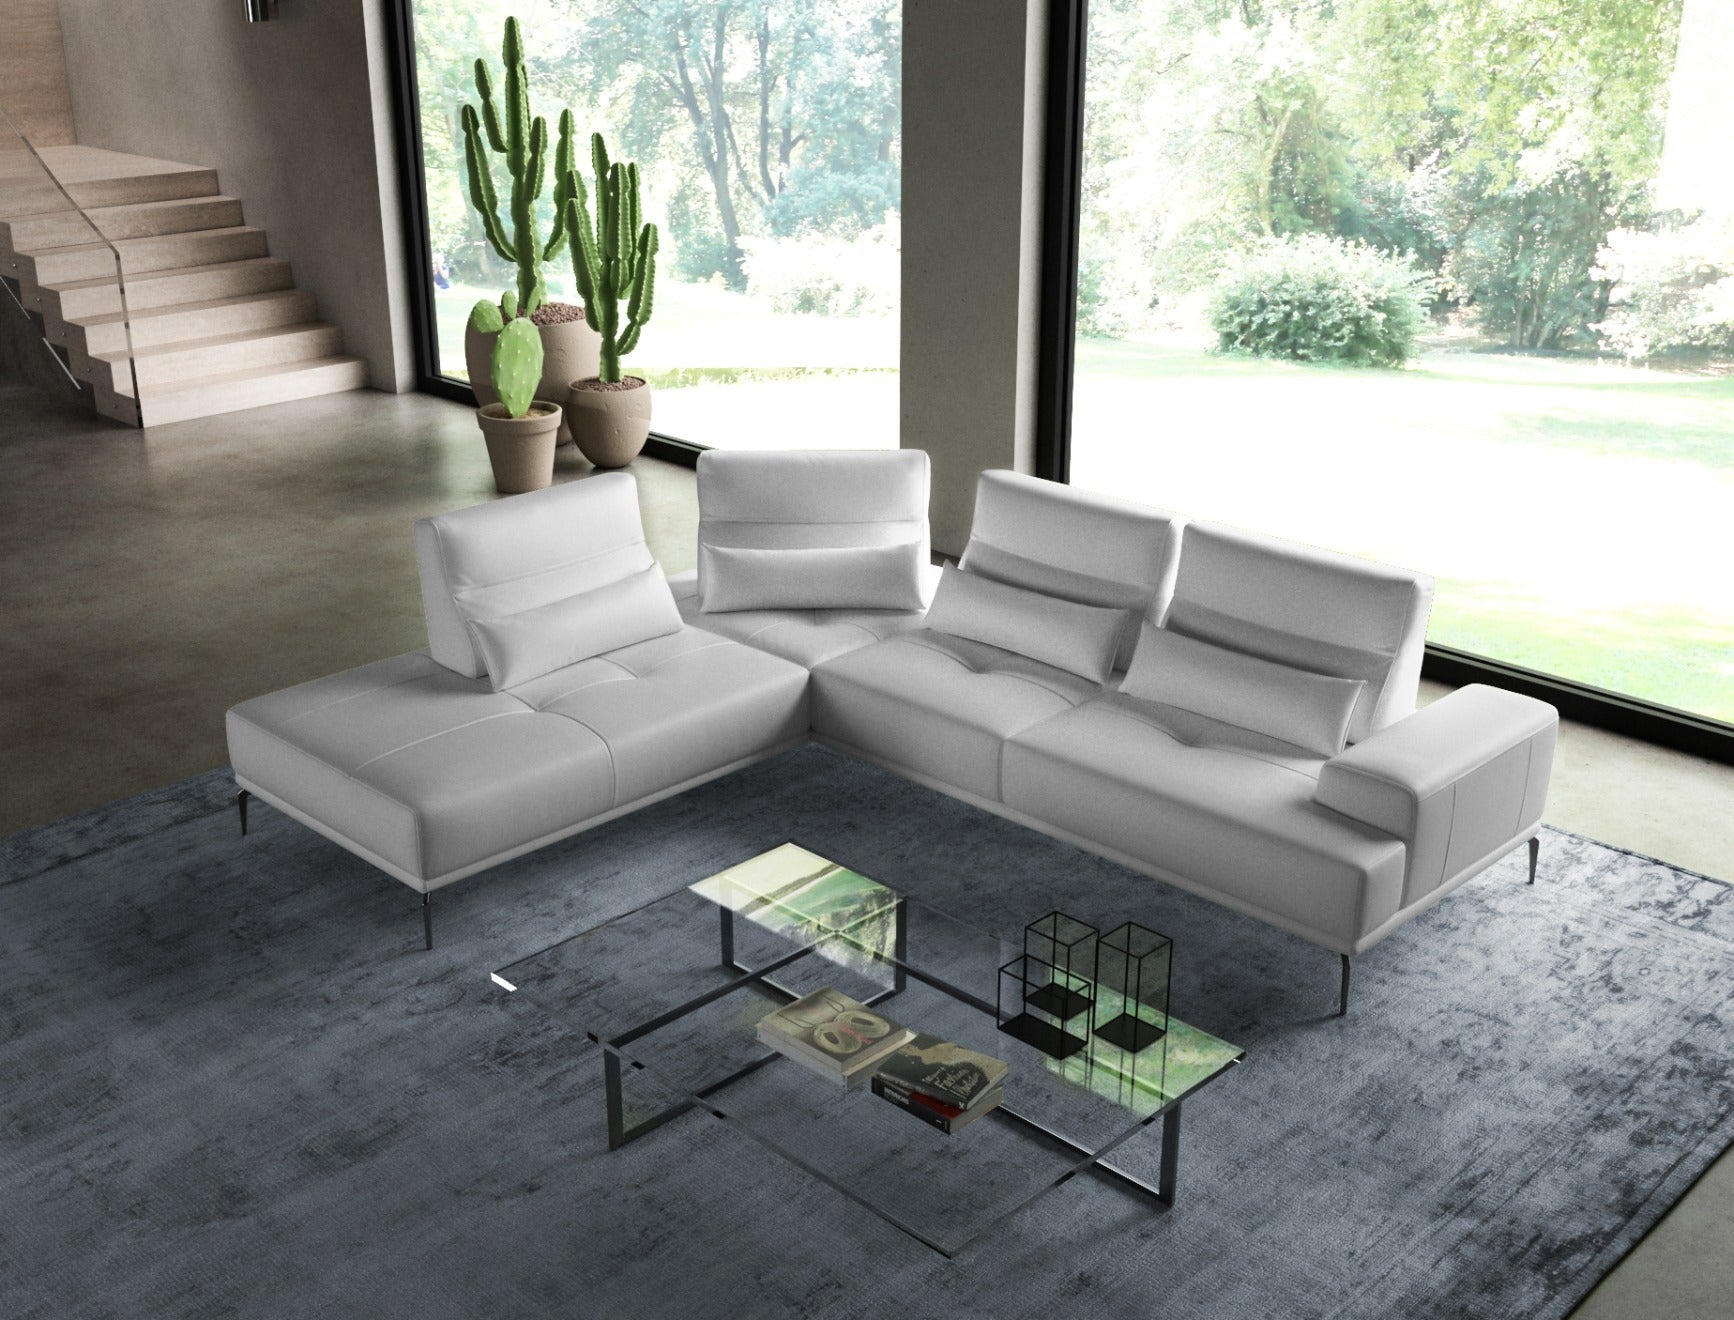 Coronelli Collezioni Sunset - Contemporary Italian White Leather LAF Sectional Sofa | Sofas |   Modishstore 